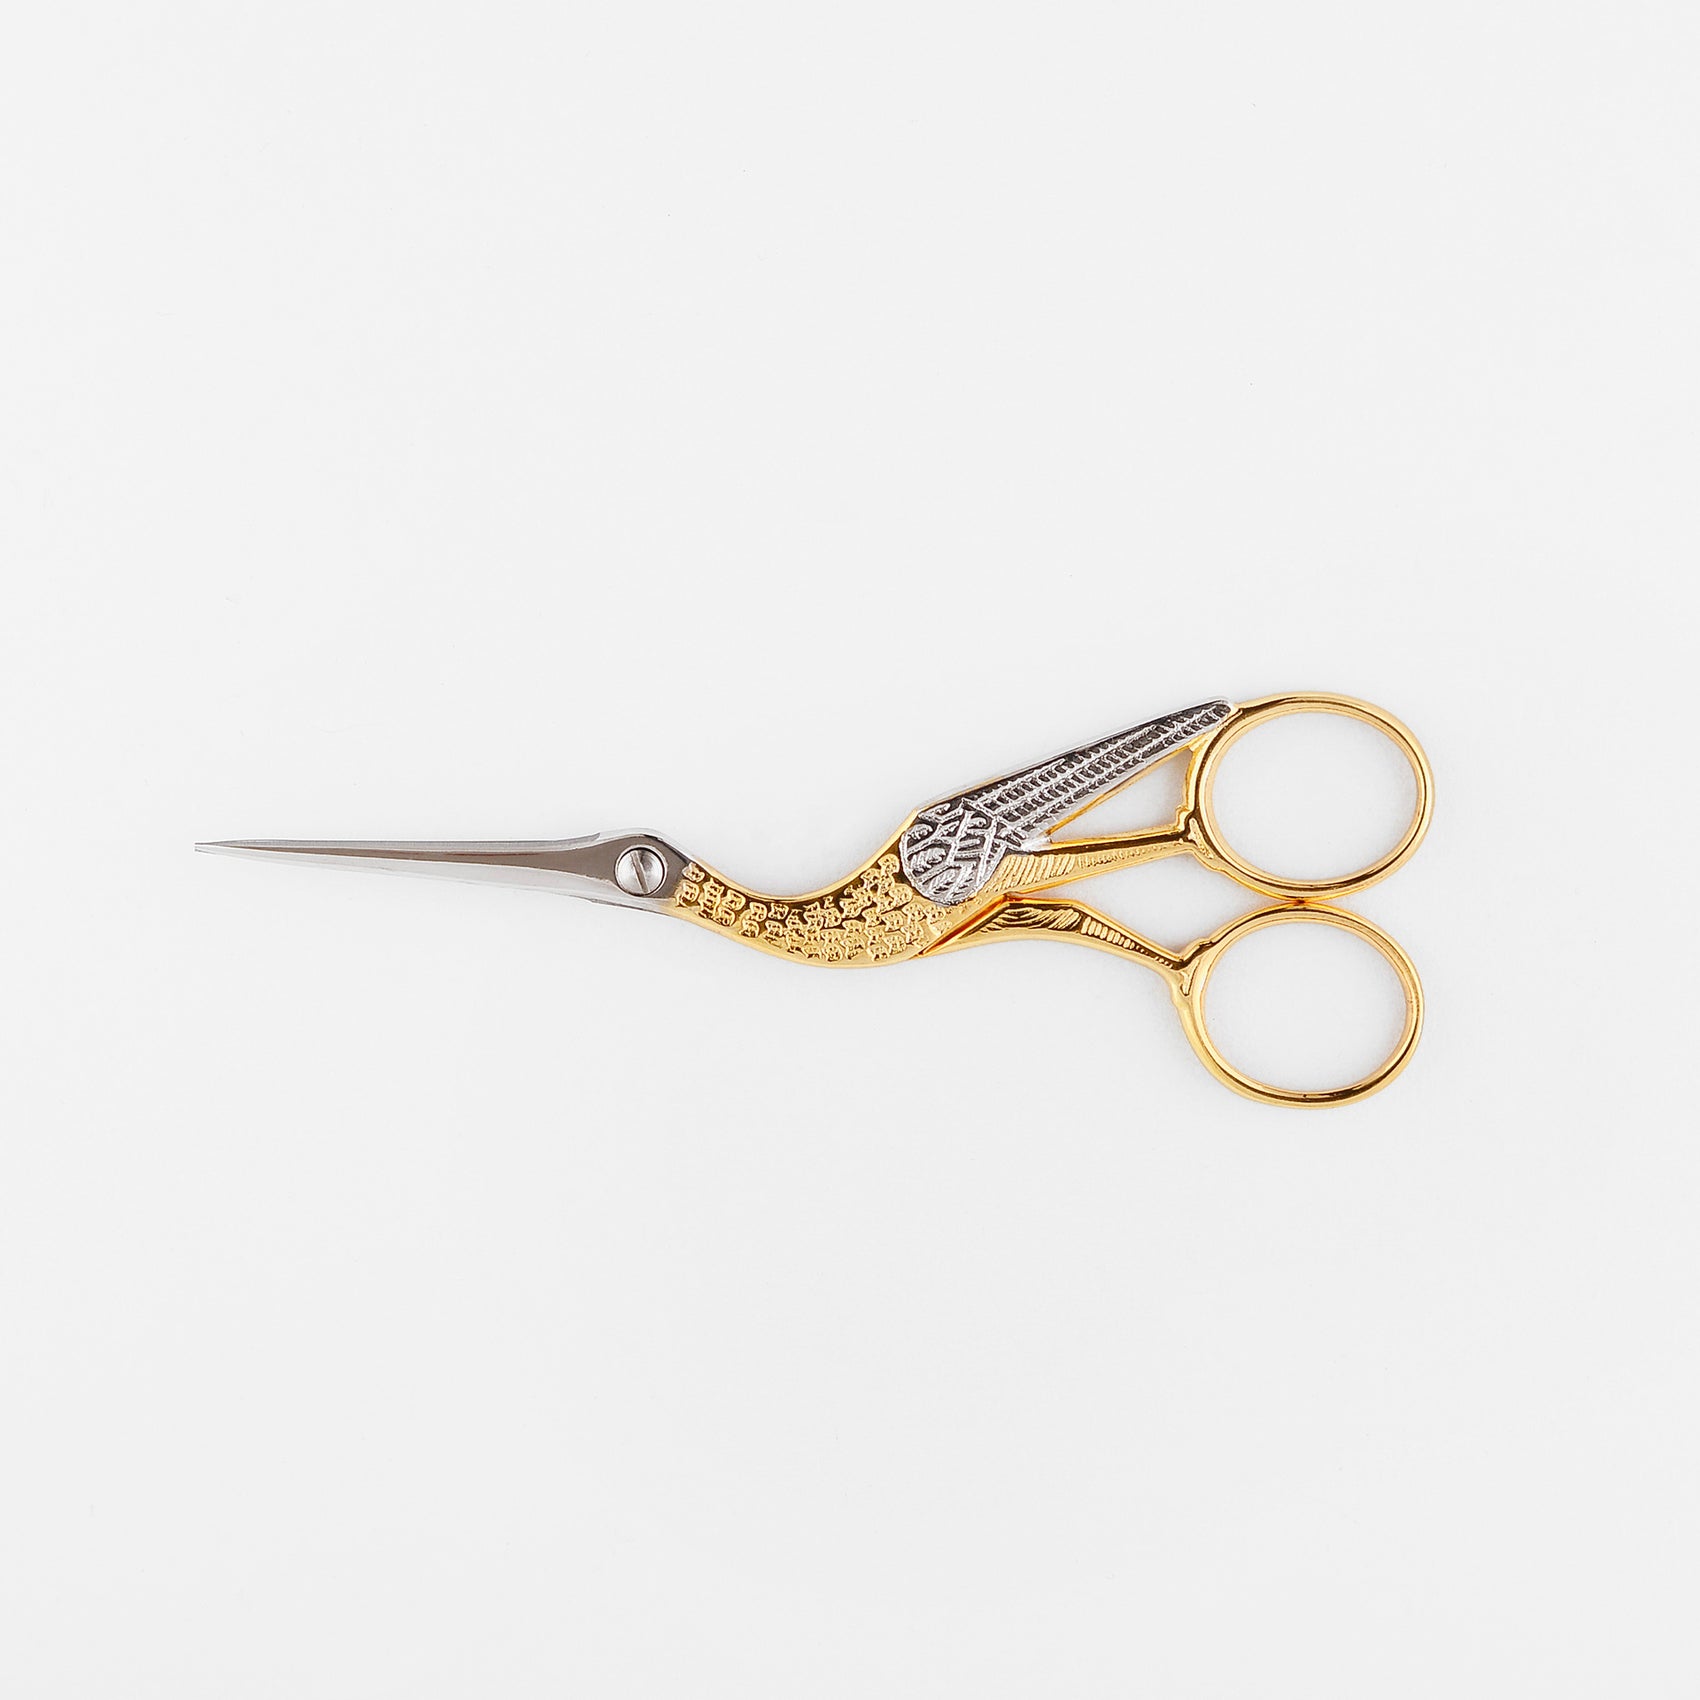 Studio Carta Crane Scissors